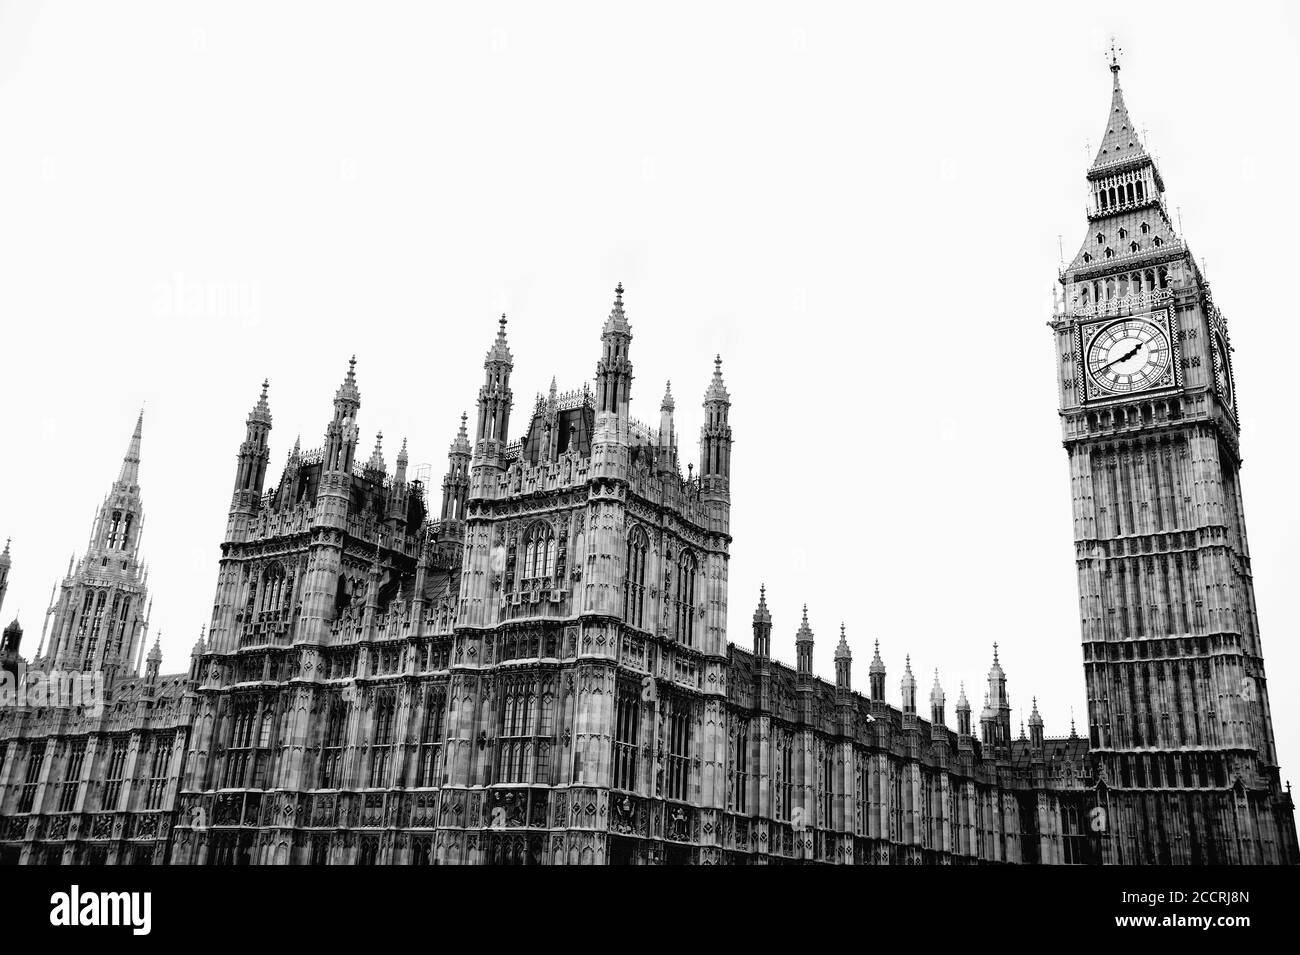 Schwarz-Weiß-Bild der Houses of Parliament in Westminster London England Großbritannien ist ein beliebtes Reiseziel Touristenattraktion Wahrzeichen sto Stockfoto